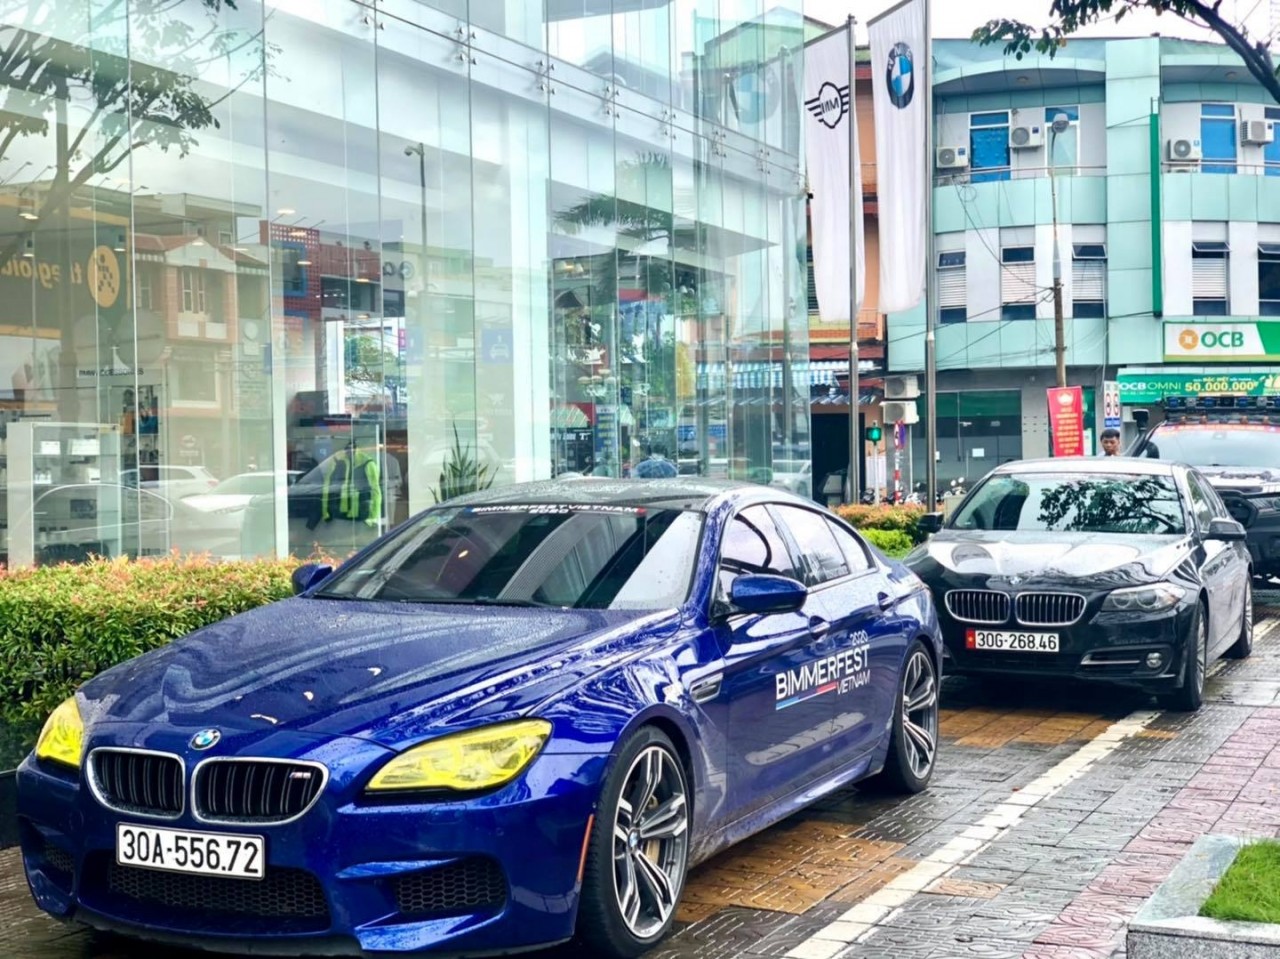 BimmerFest lần đầu tổ chức tại Việt Nam thu hút 100 chiếc BMW